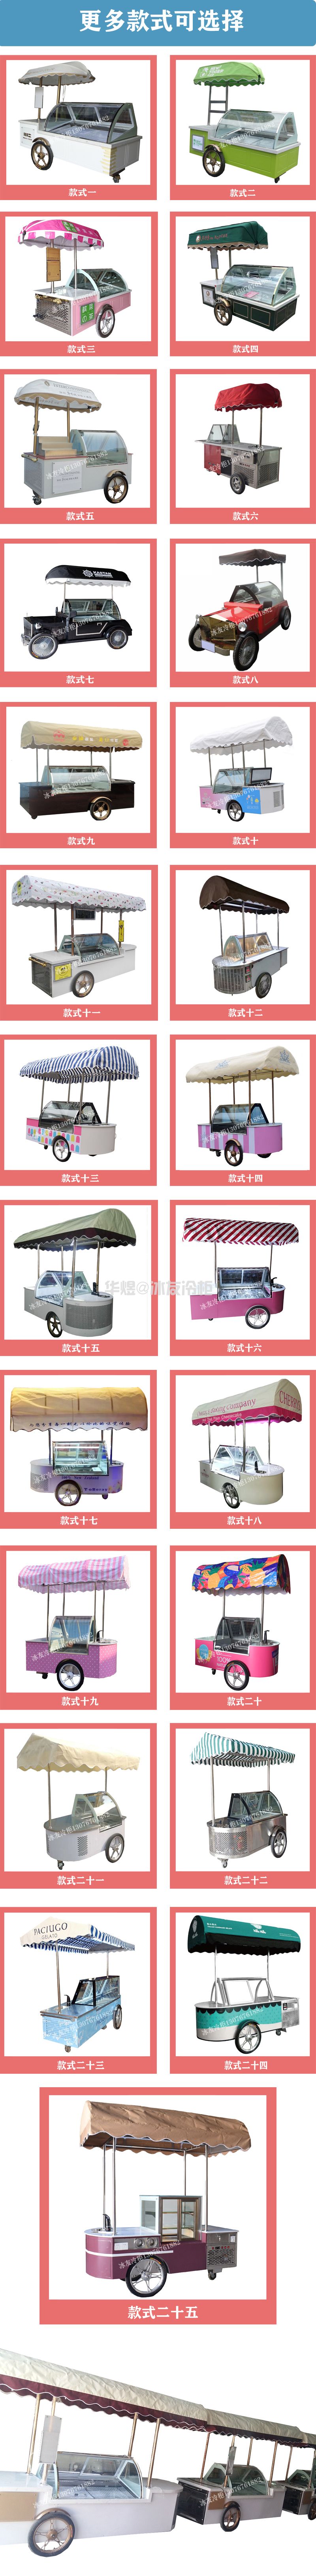 冰友10桶冰淇淋车流动式冰淇淋车花车展示柜小吃车(图15)